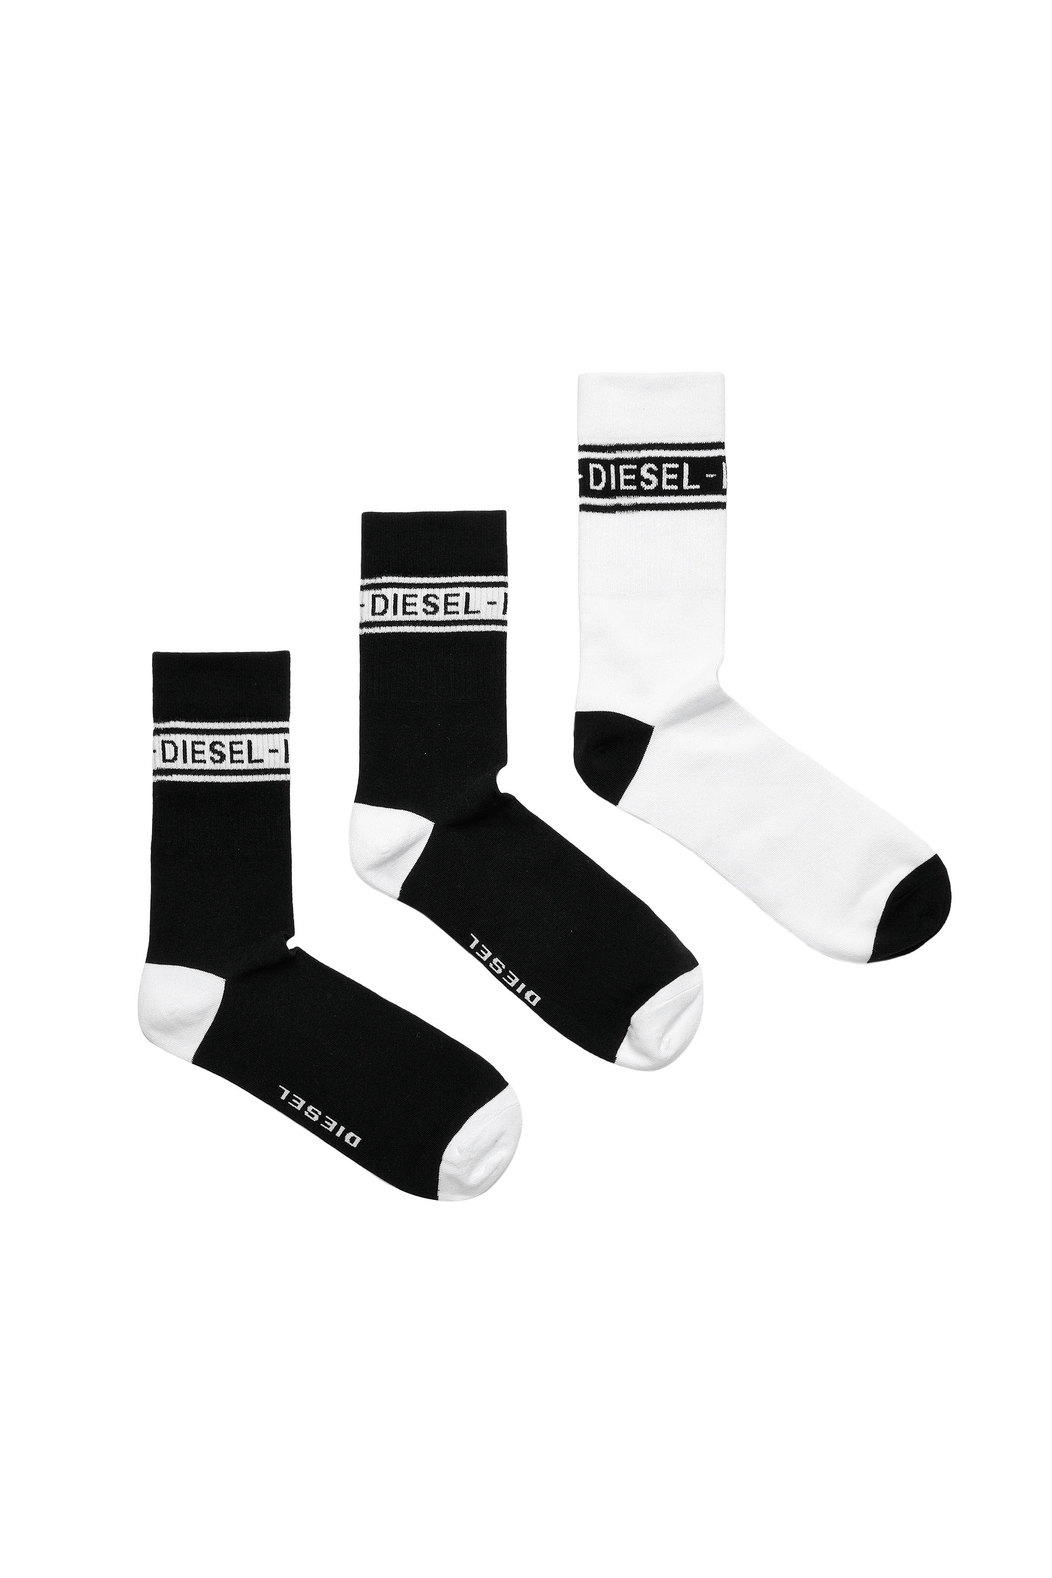 Three-pack of Diesel Industry logo socks